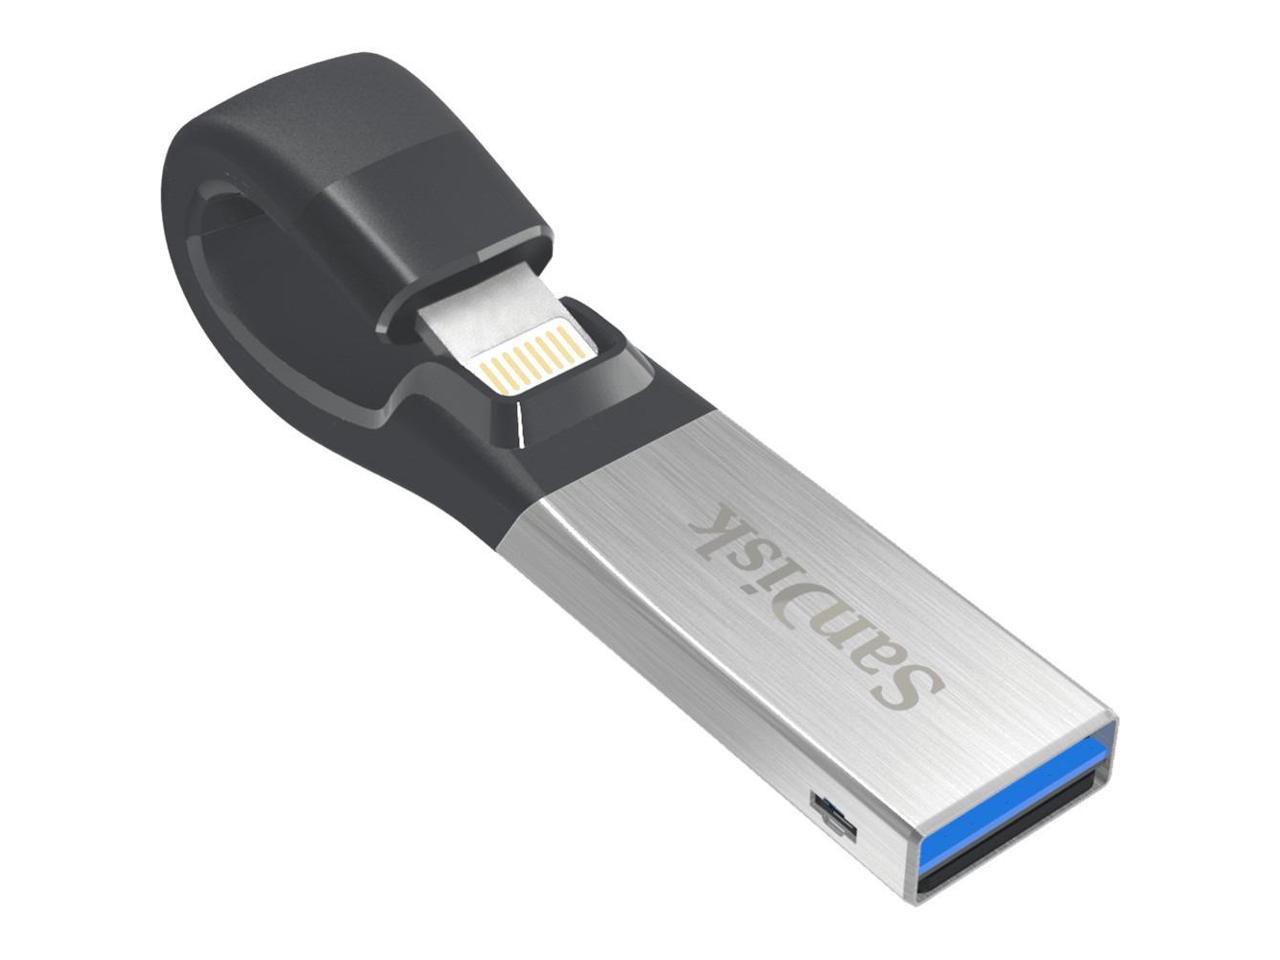 32GB IXPAND FLASH DRIVE USB 3.0